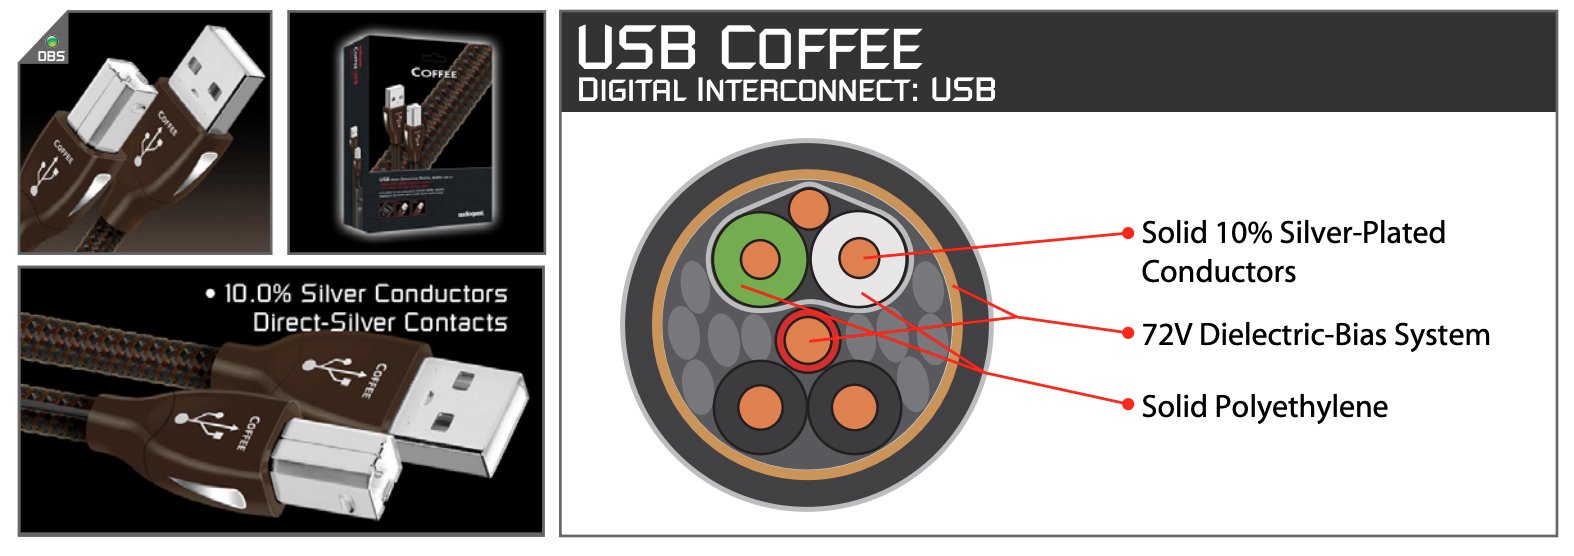 ,תמונת אווירה של הכבל אודיו audio quest usb coffee חתוך עם כל הגידים שלו חשופים 